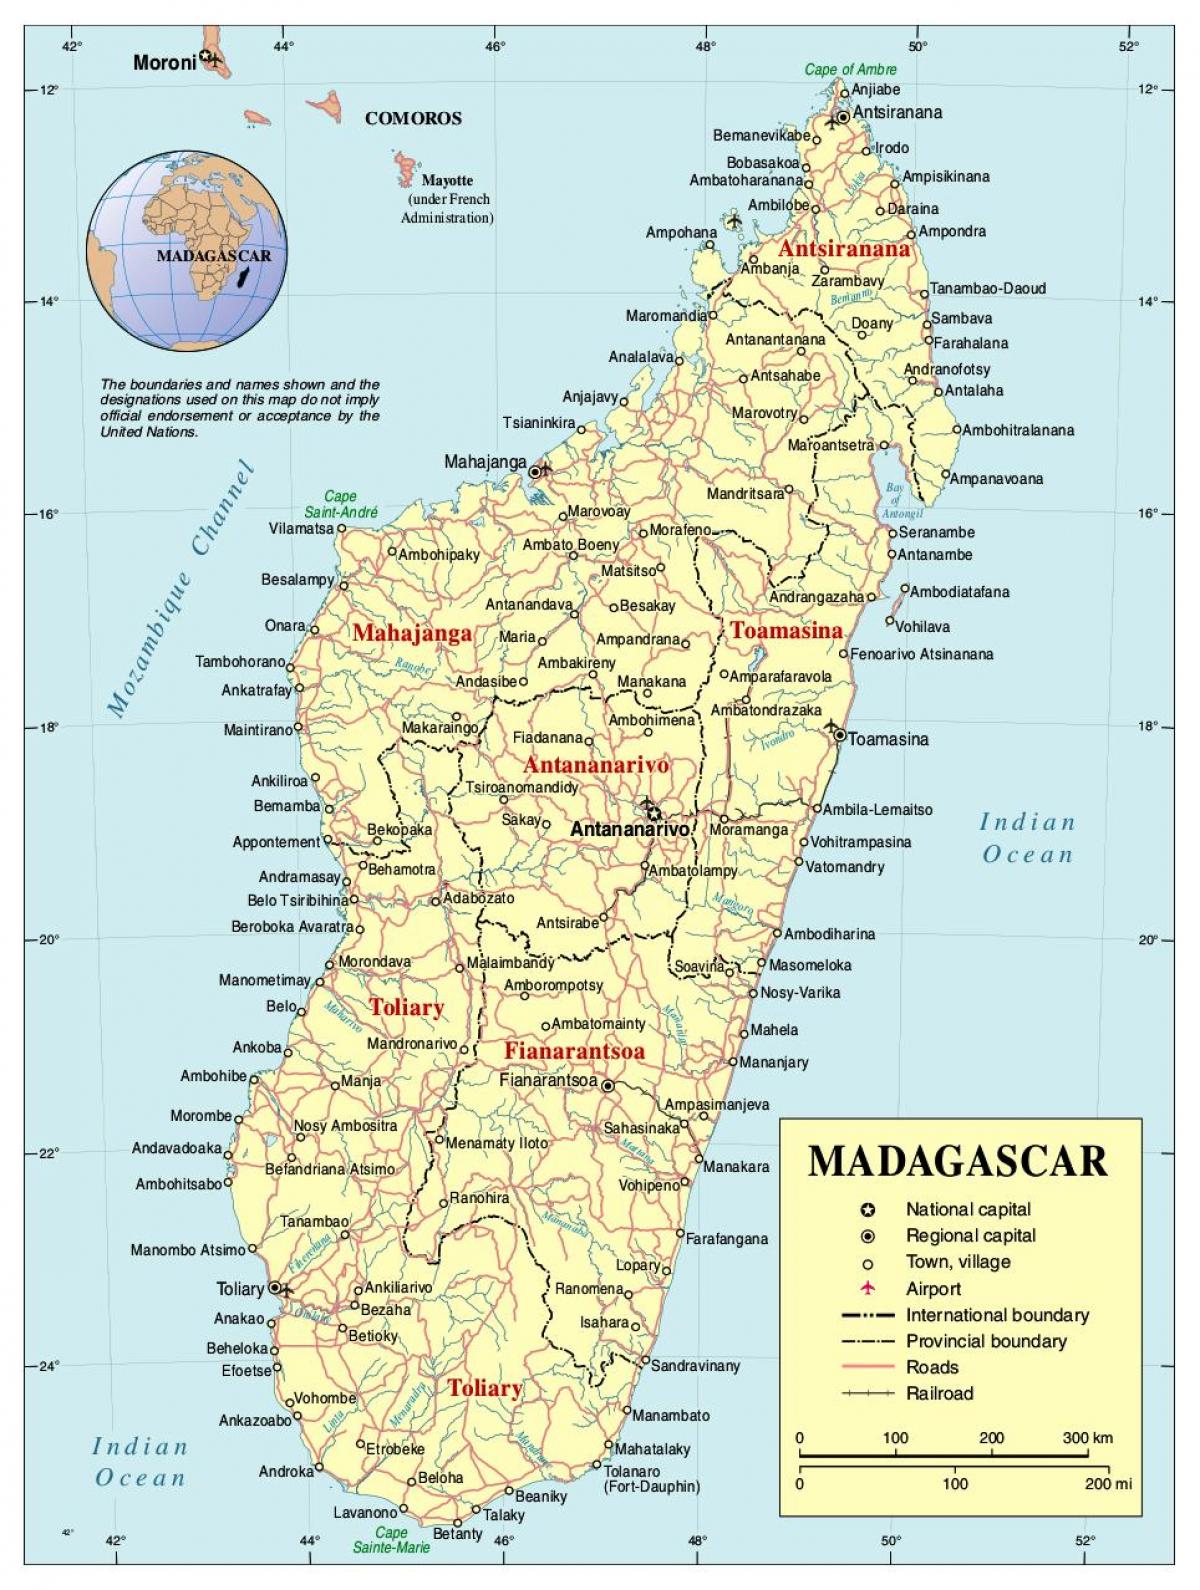 نقشه جاده های ماداگاسکار